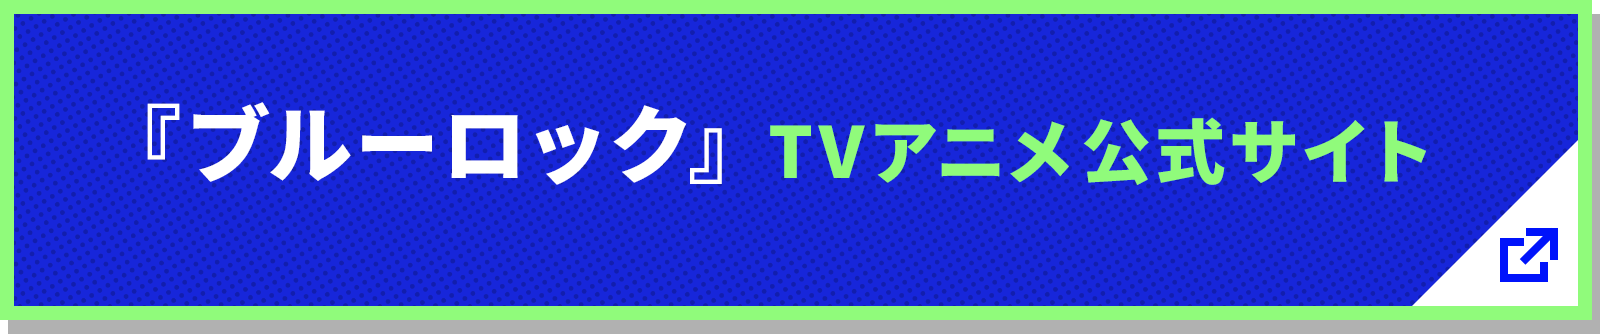 ブルーロック TVアニメ公式サイト